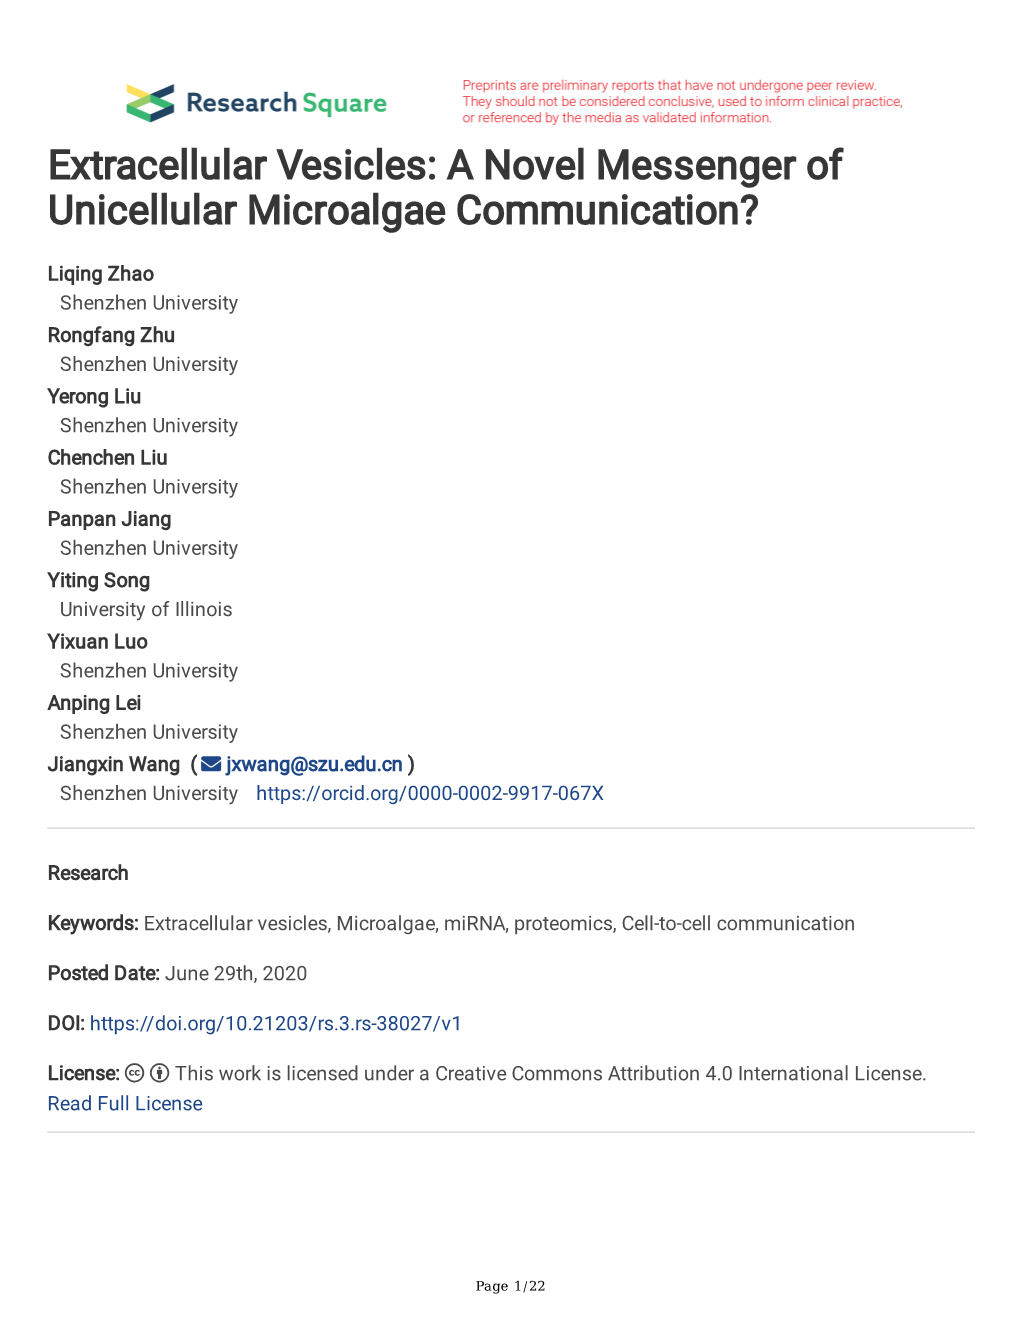 Extracellular Vesicles: a Novel Messenger of Unicellular Microalgae Communication?